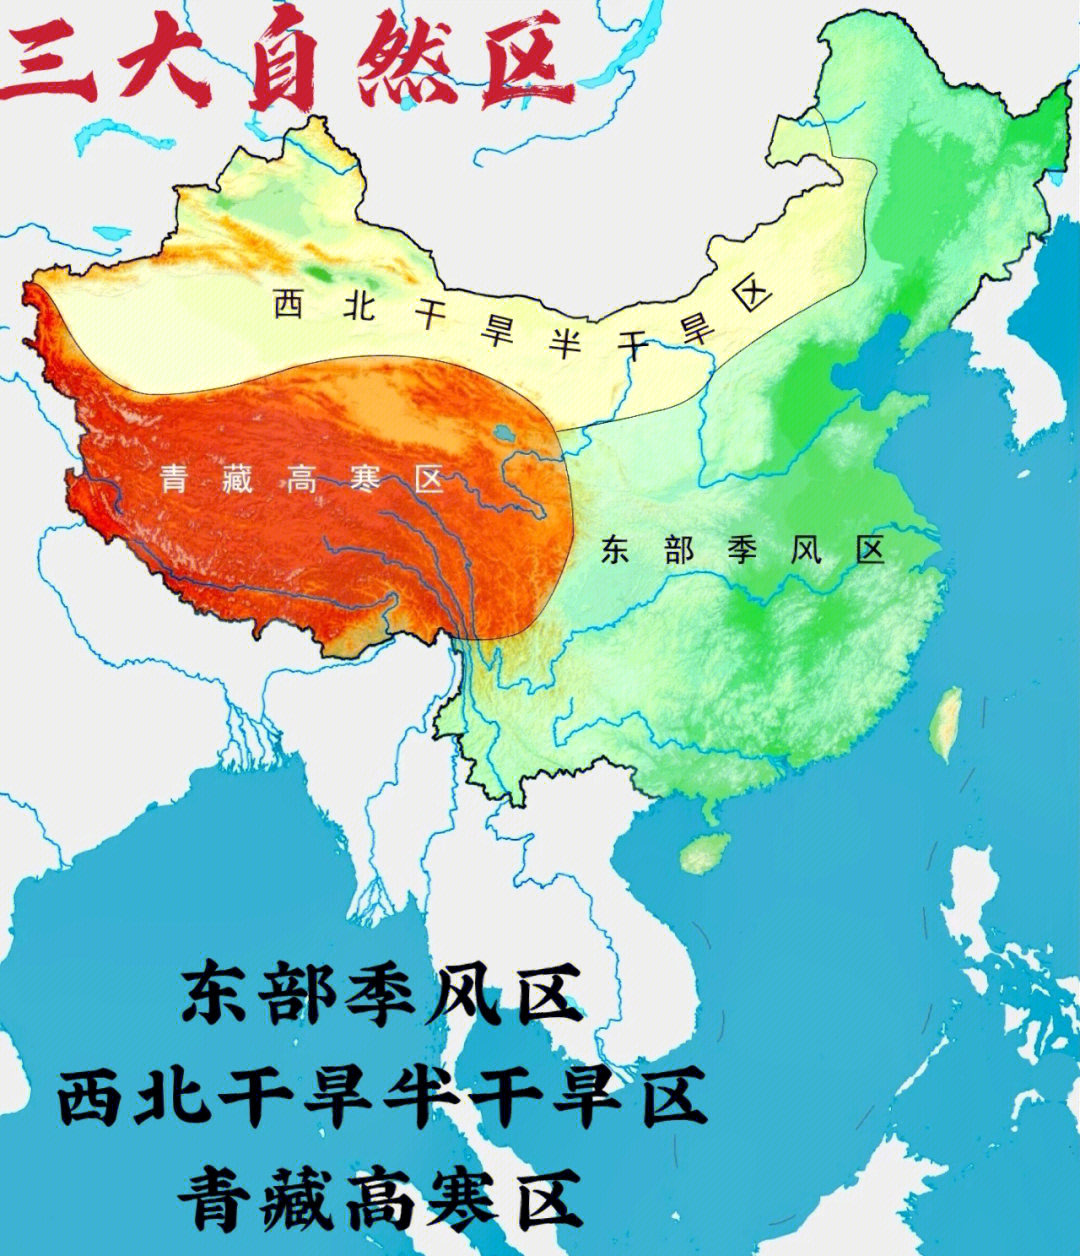 中国三大自然区划分图图片